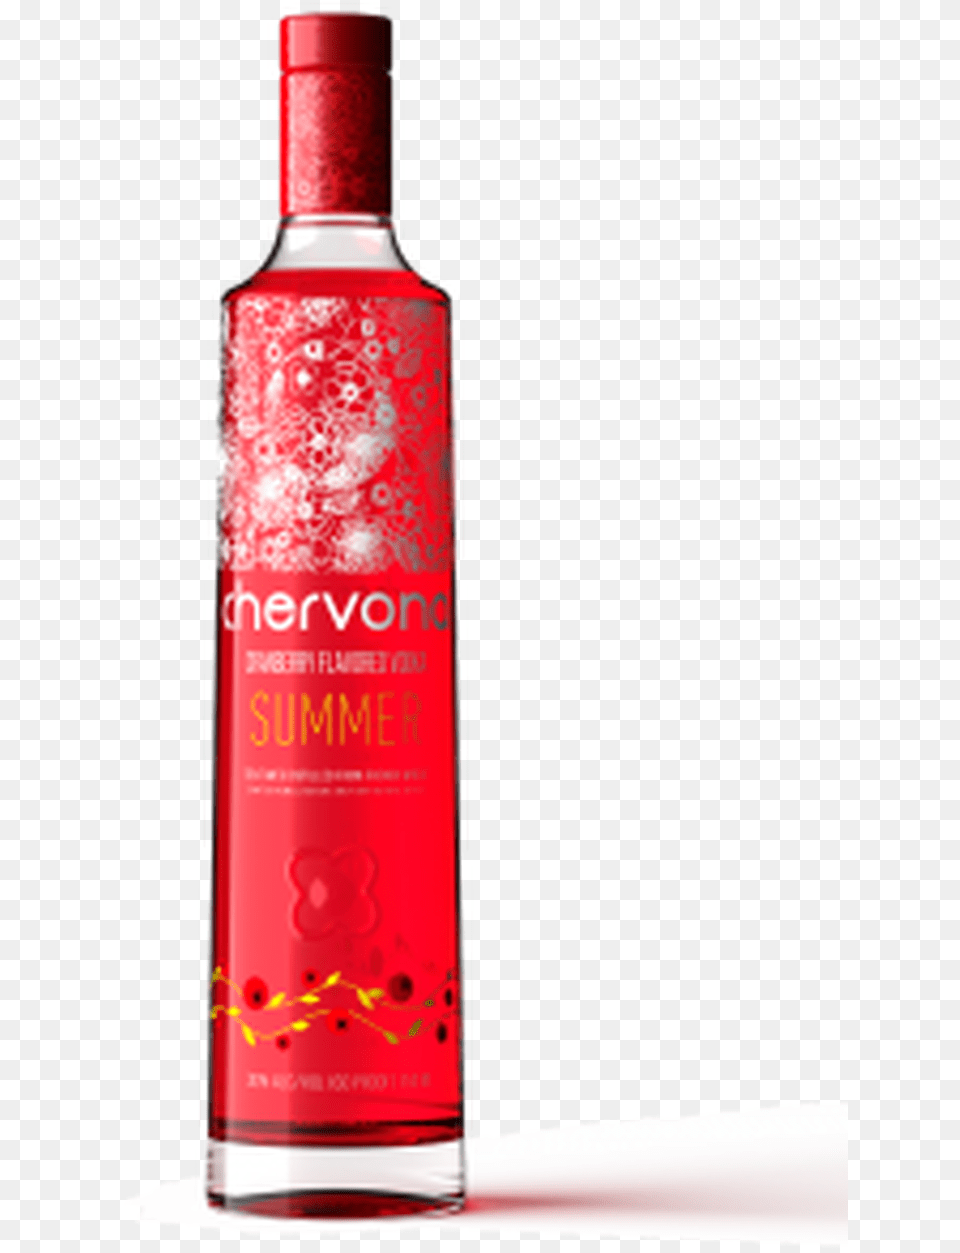 Chervona Summer Cranberry Infused Vodka Cranberry Vodka Bottle, Alcohol, Beverage, Liquor, Can Png Image